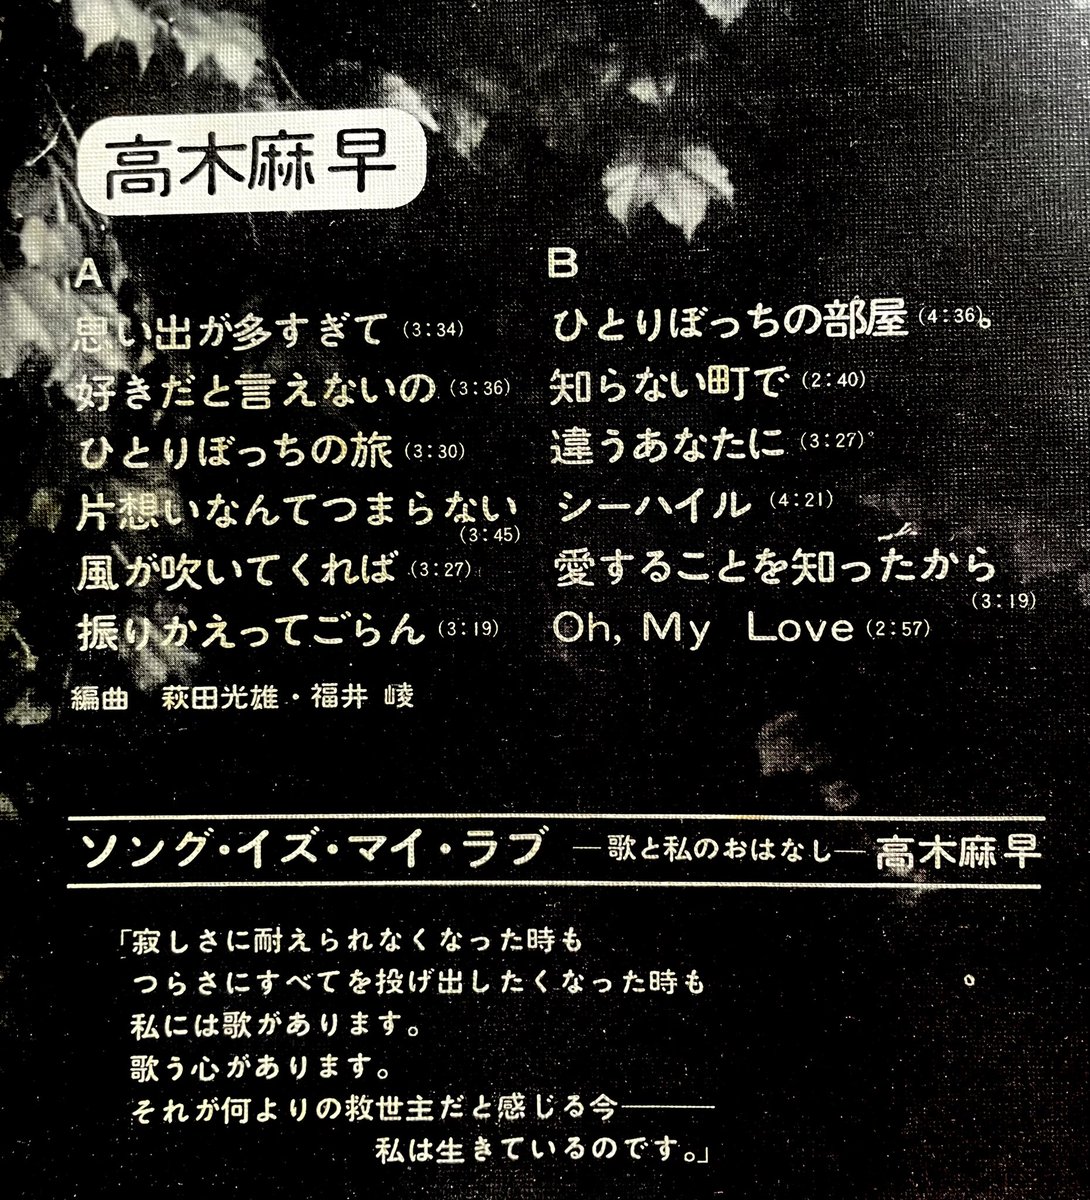 高木麻早のレコードを買いました インナーの書体が太丸ゴシック体BD1で埋め尽くされていた